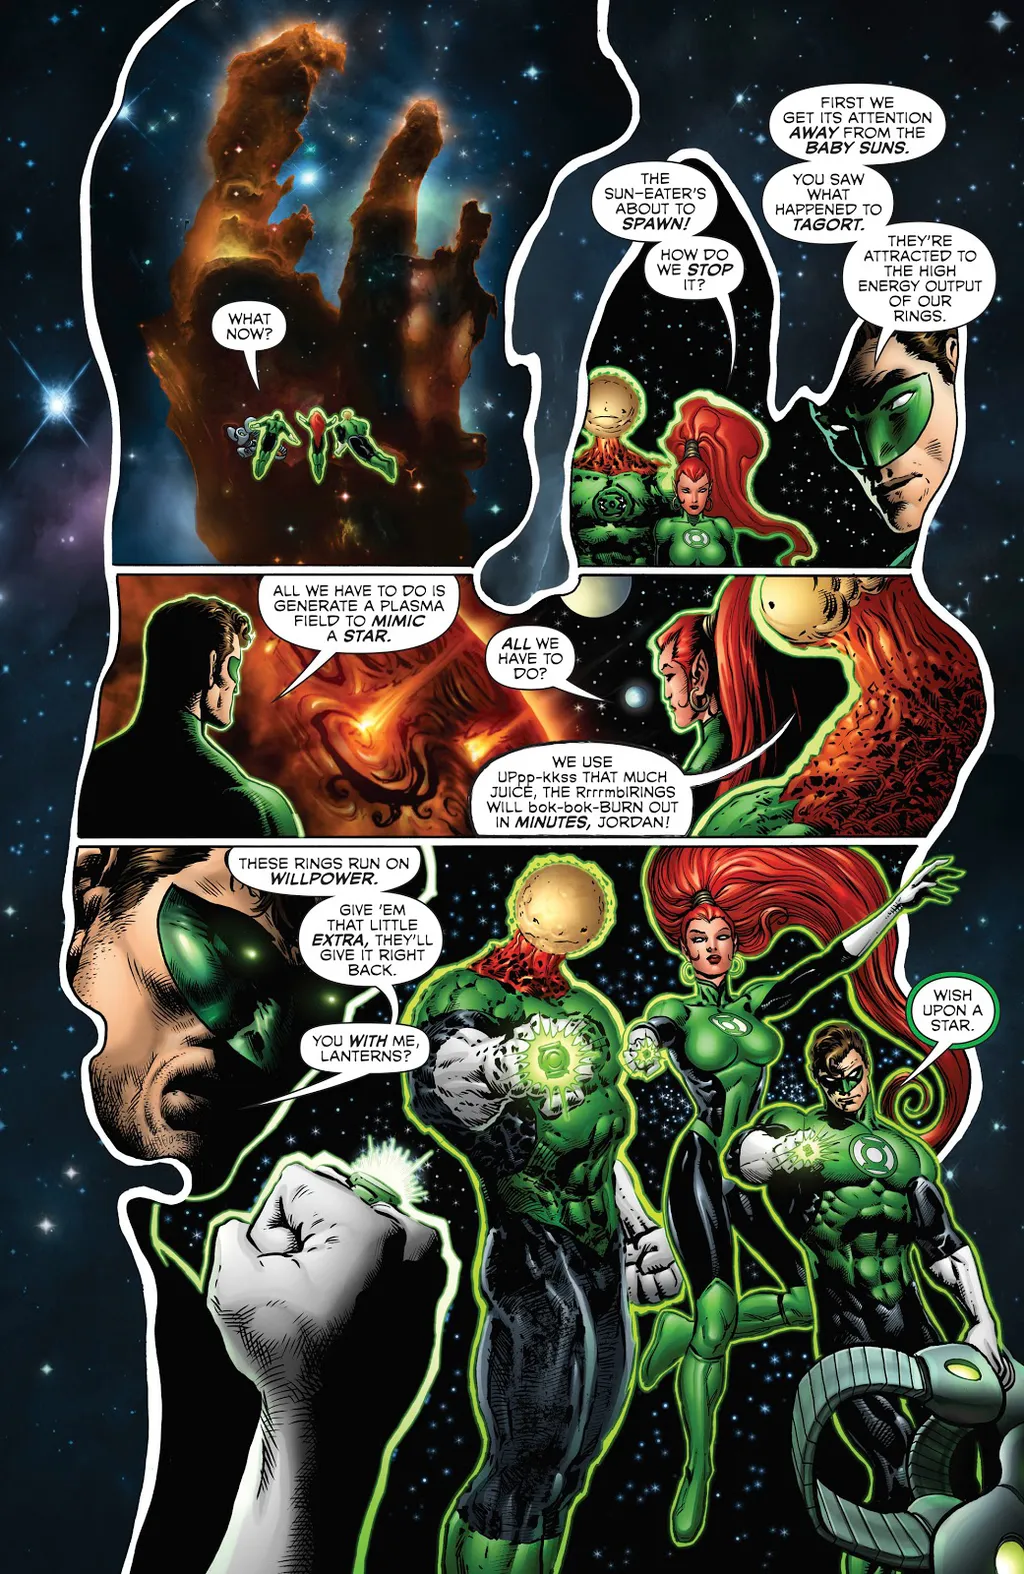 Cena de The Green Lantern nº 4 com os Lanternas Verdes criando um sol; que Superman acharia disso? (Imagem: Reprodução/DC)